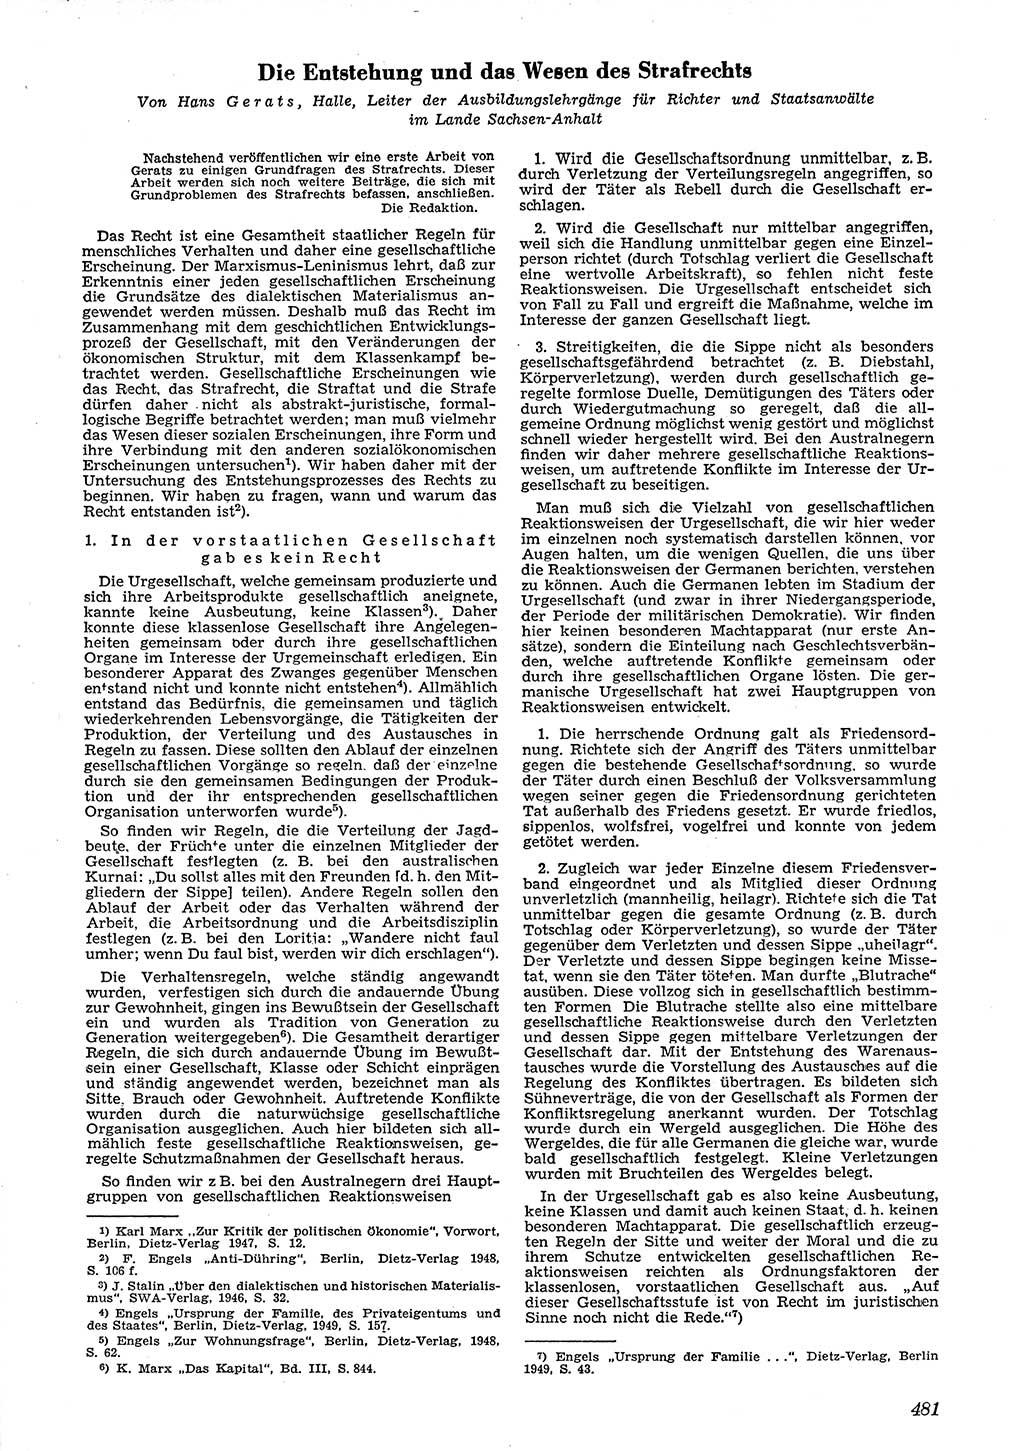 Neue Justiz (NJ), Zeitschrift für Recht und Rechtswissenschaft [Deutsche Demokratische Republik (DDR)], 4. Jahrgang 1950, Seite 481 (NJ DDR 1950, S. 481)